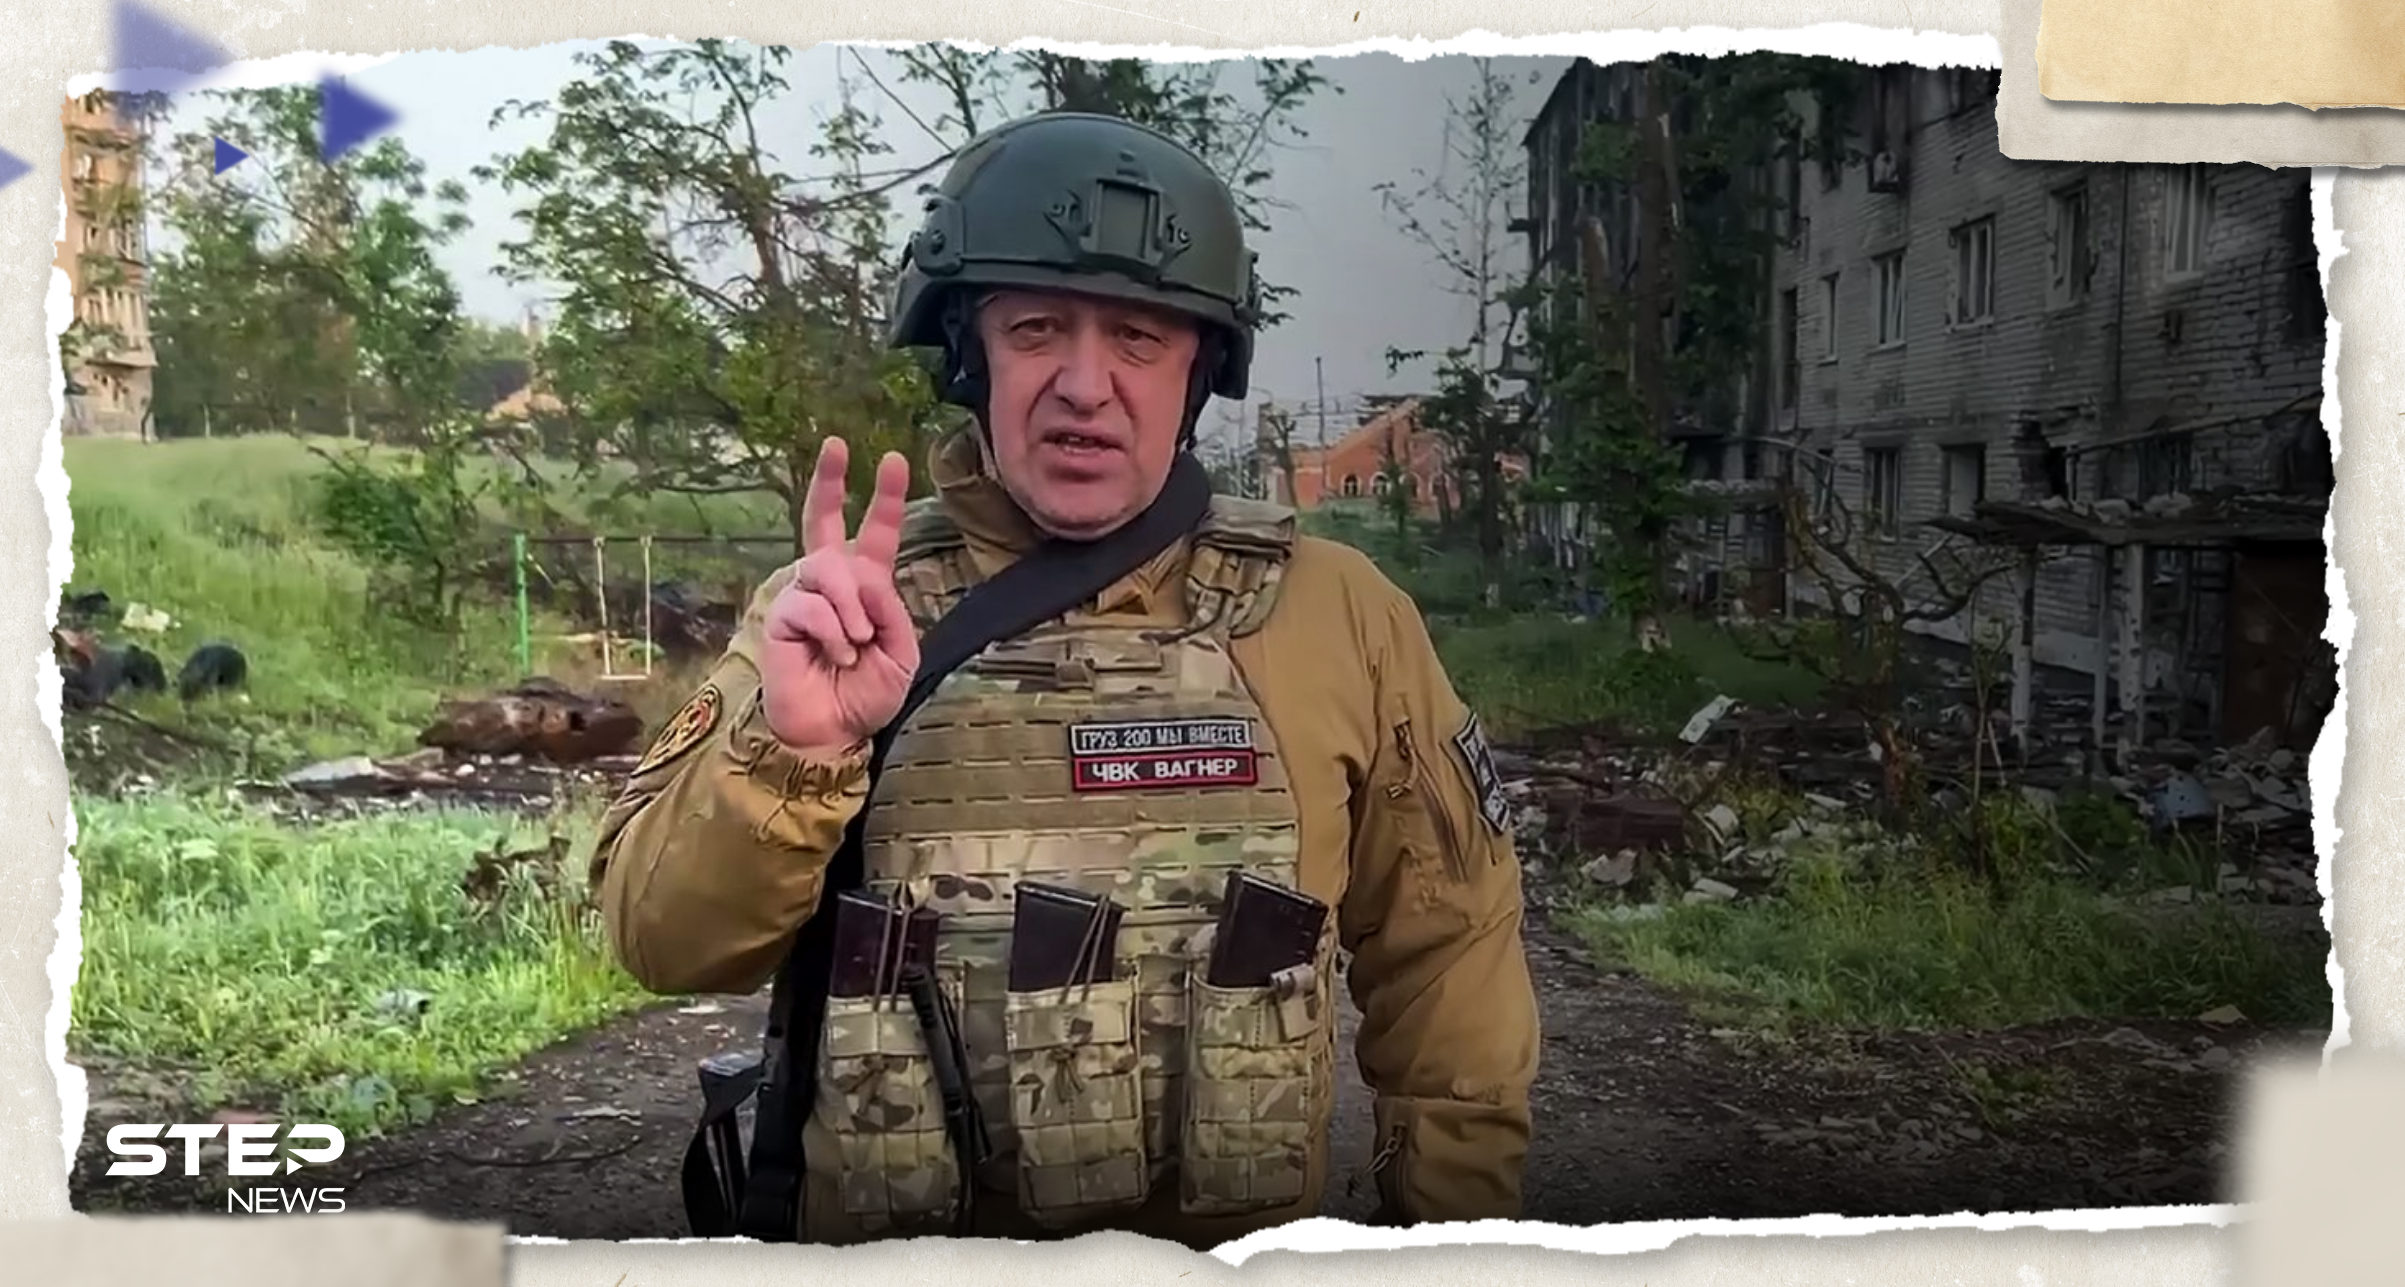 بعد أن تحداه.. قائد فاغنر "يحرج" بوتين بمعلومات "صادمة" عن حرب أوكرانيا